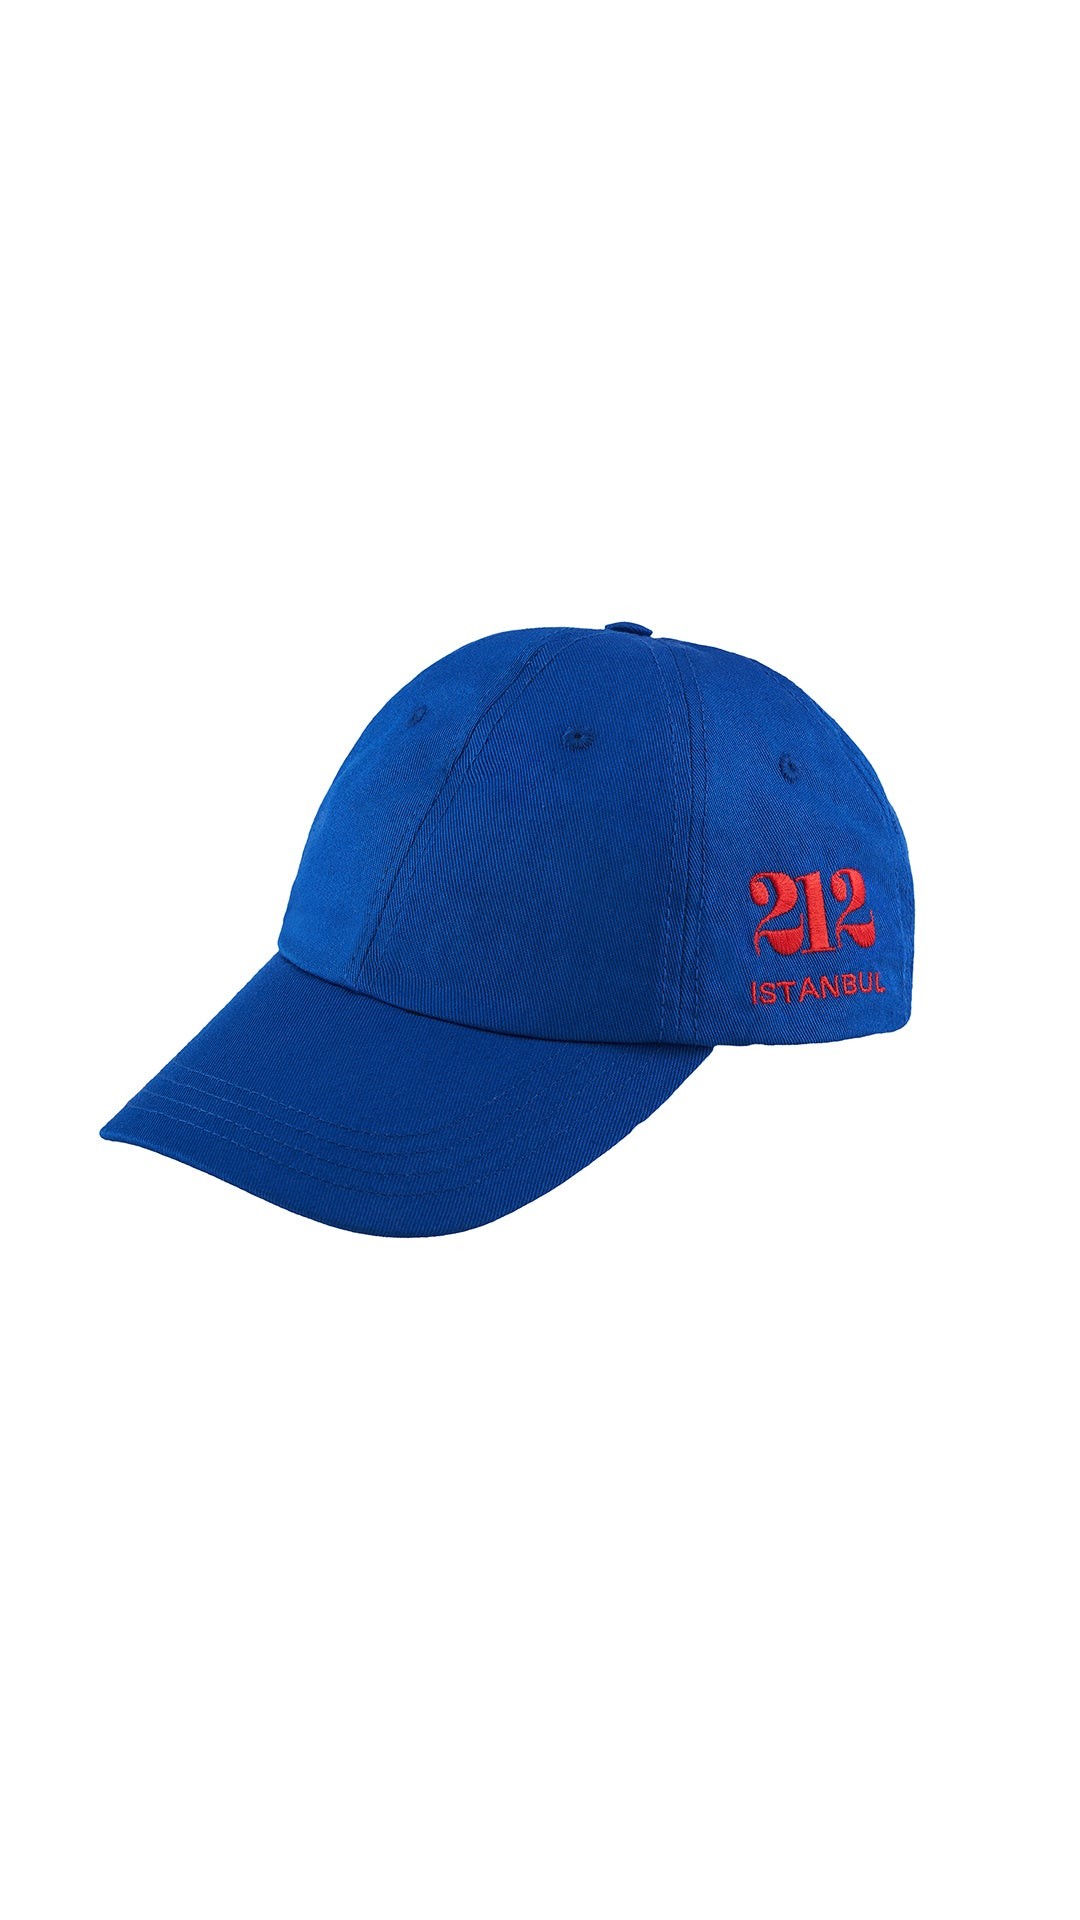 212 HAT